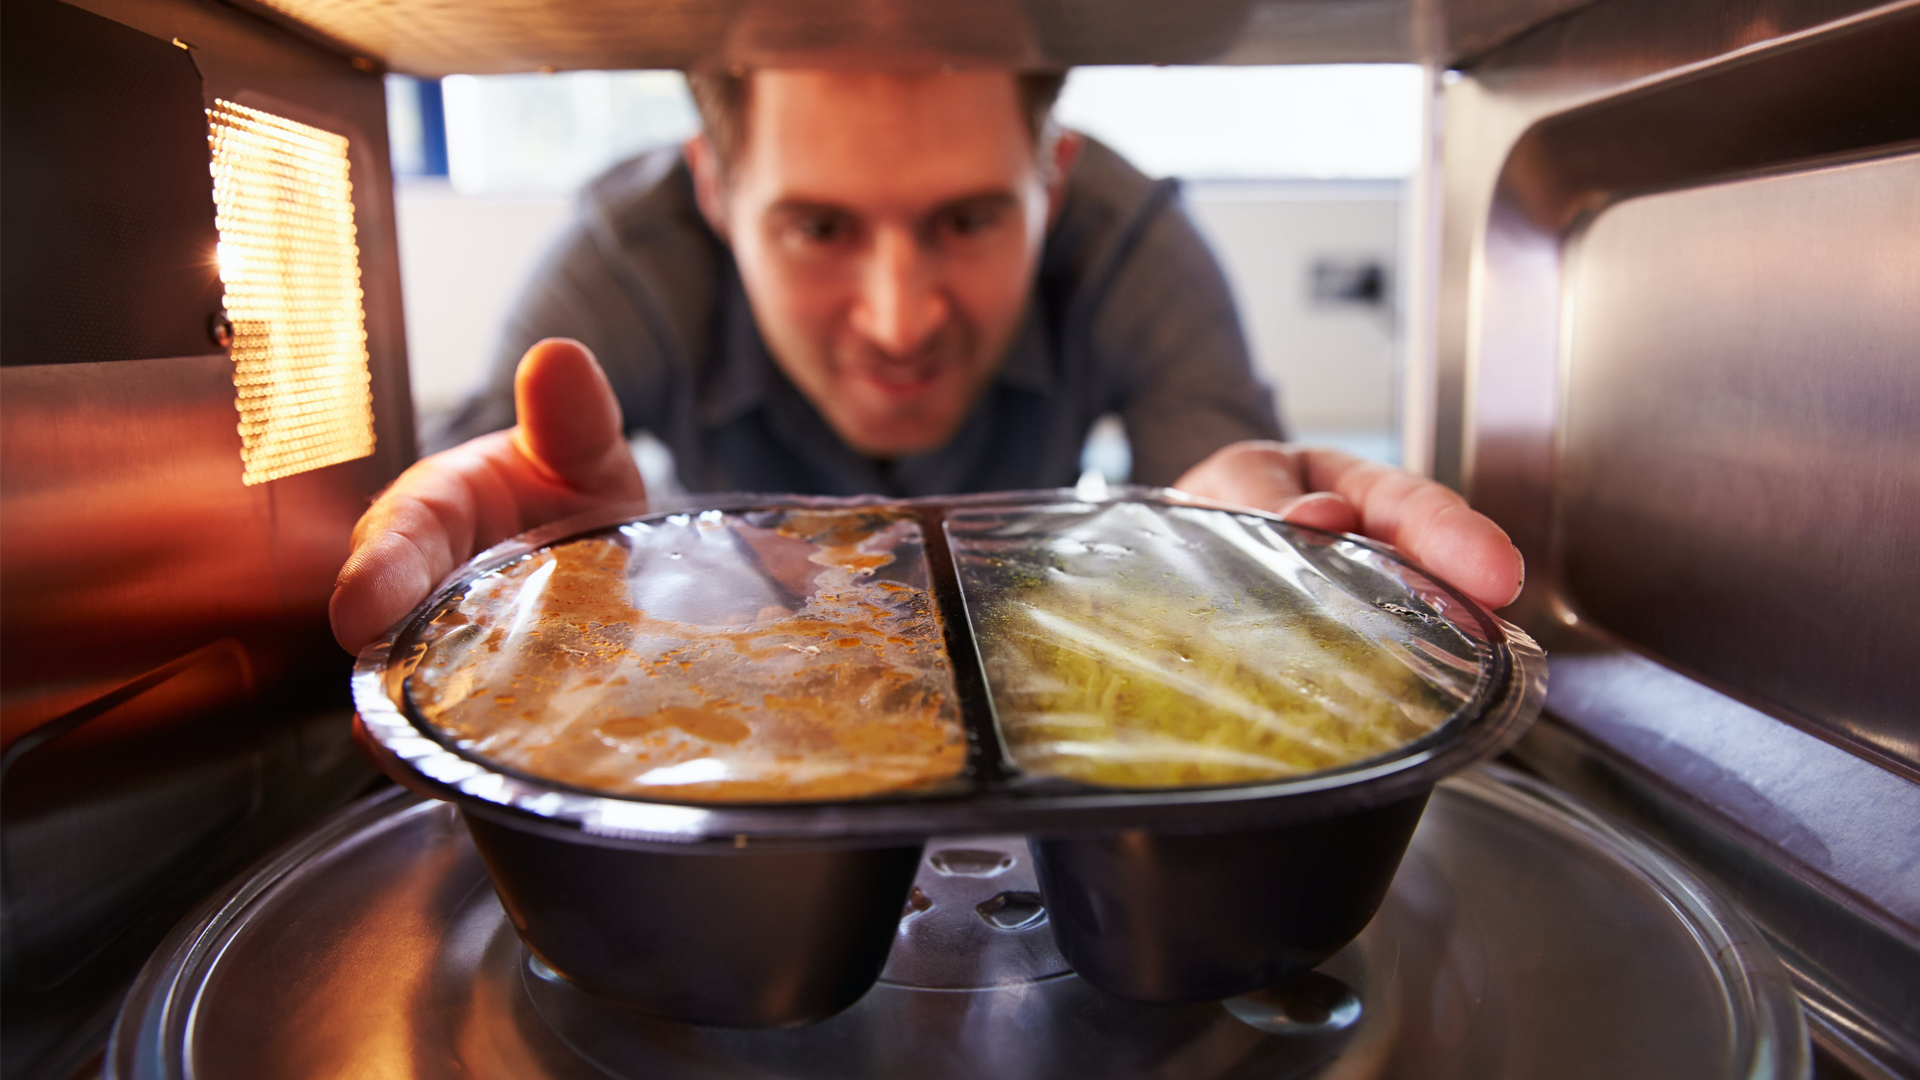 V čem ohřívat jídlo v mikrovlnce?